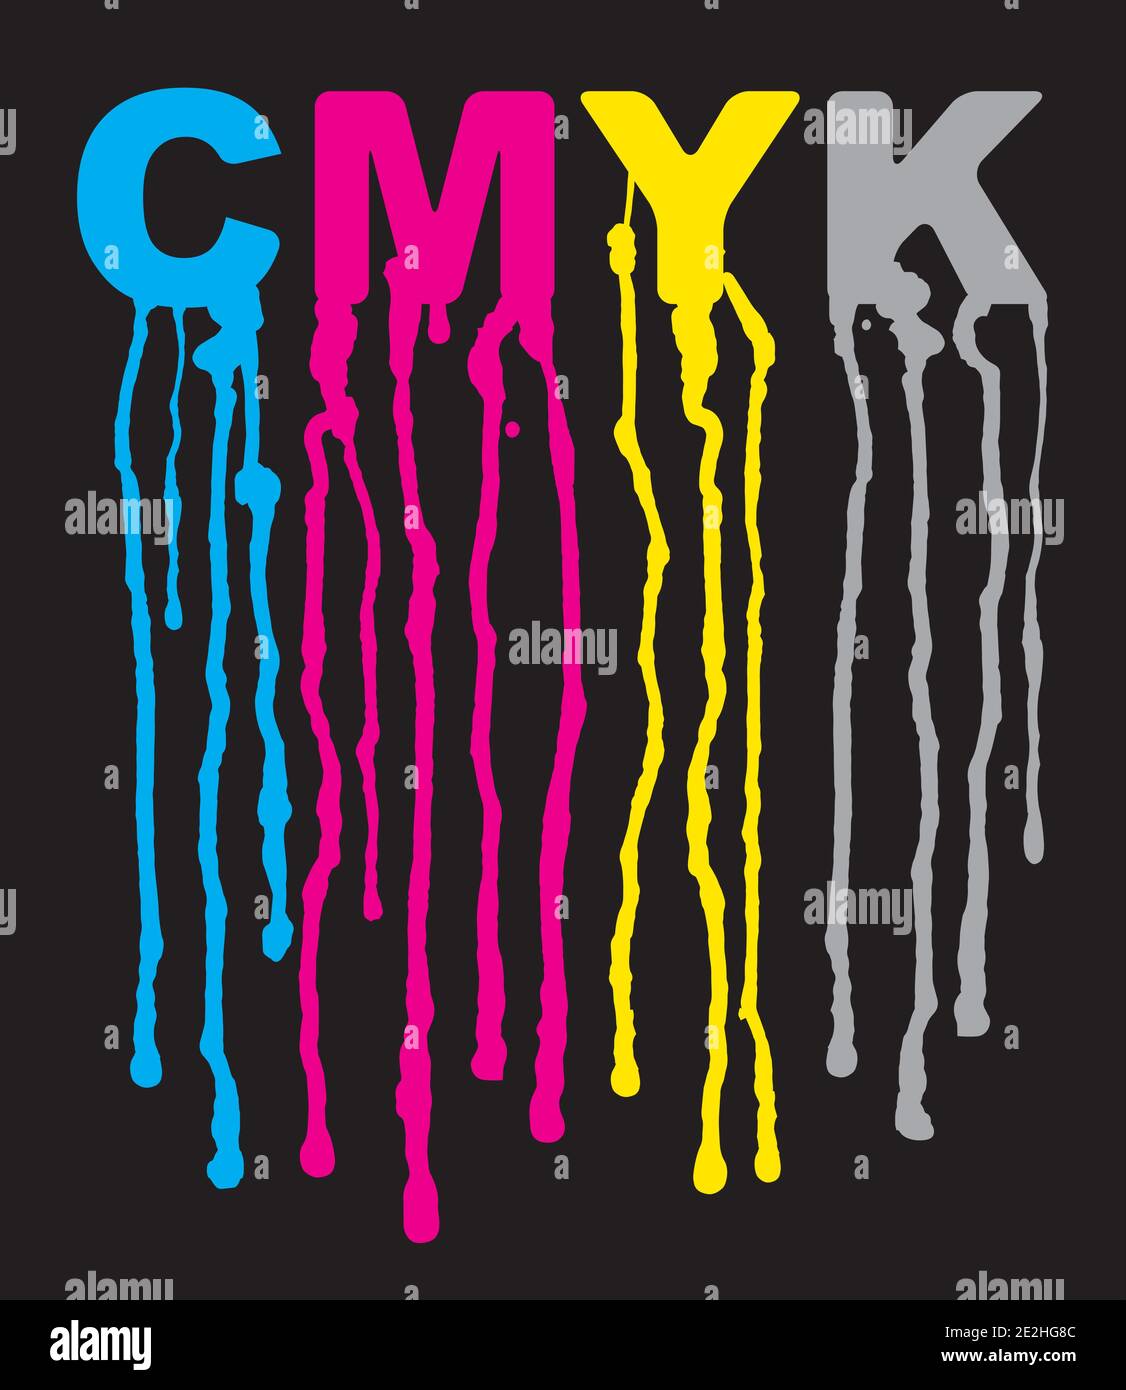 Fließende Farbe, CMYK-Druckfarben. Abbildung mit CMYK-Beschriftung mit tropfender Farbe. Konzept zur Präsentation des Farbdrucks. Vektor verfügbar. Stock Vektor